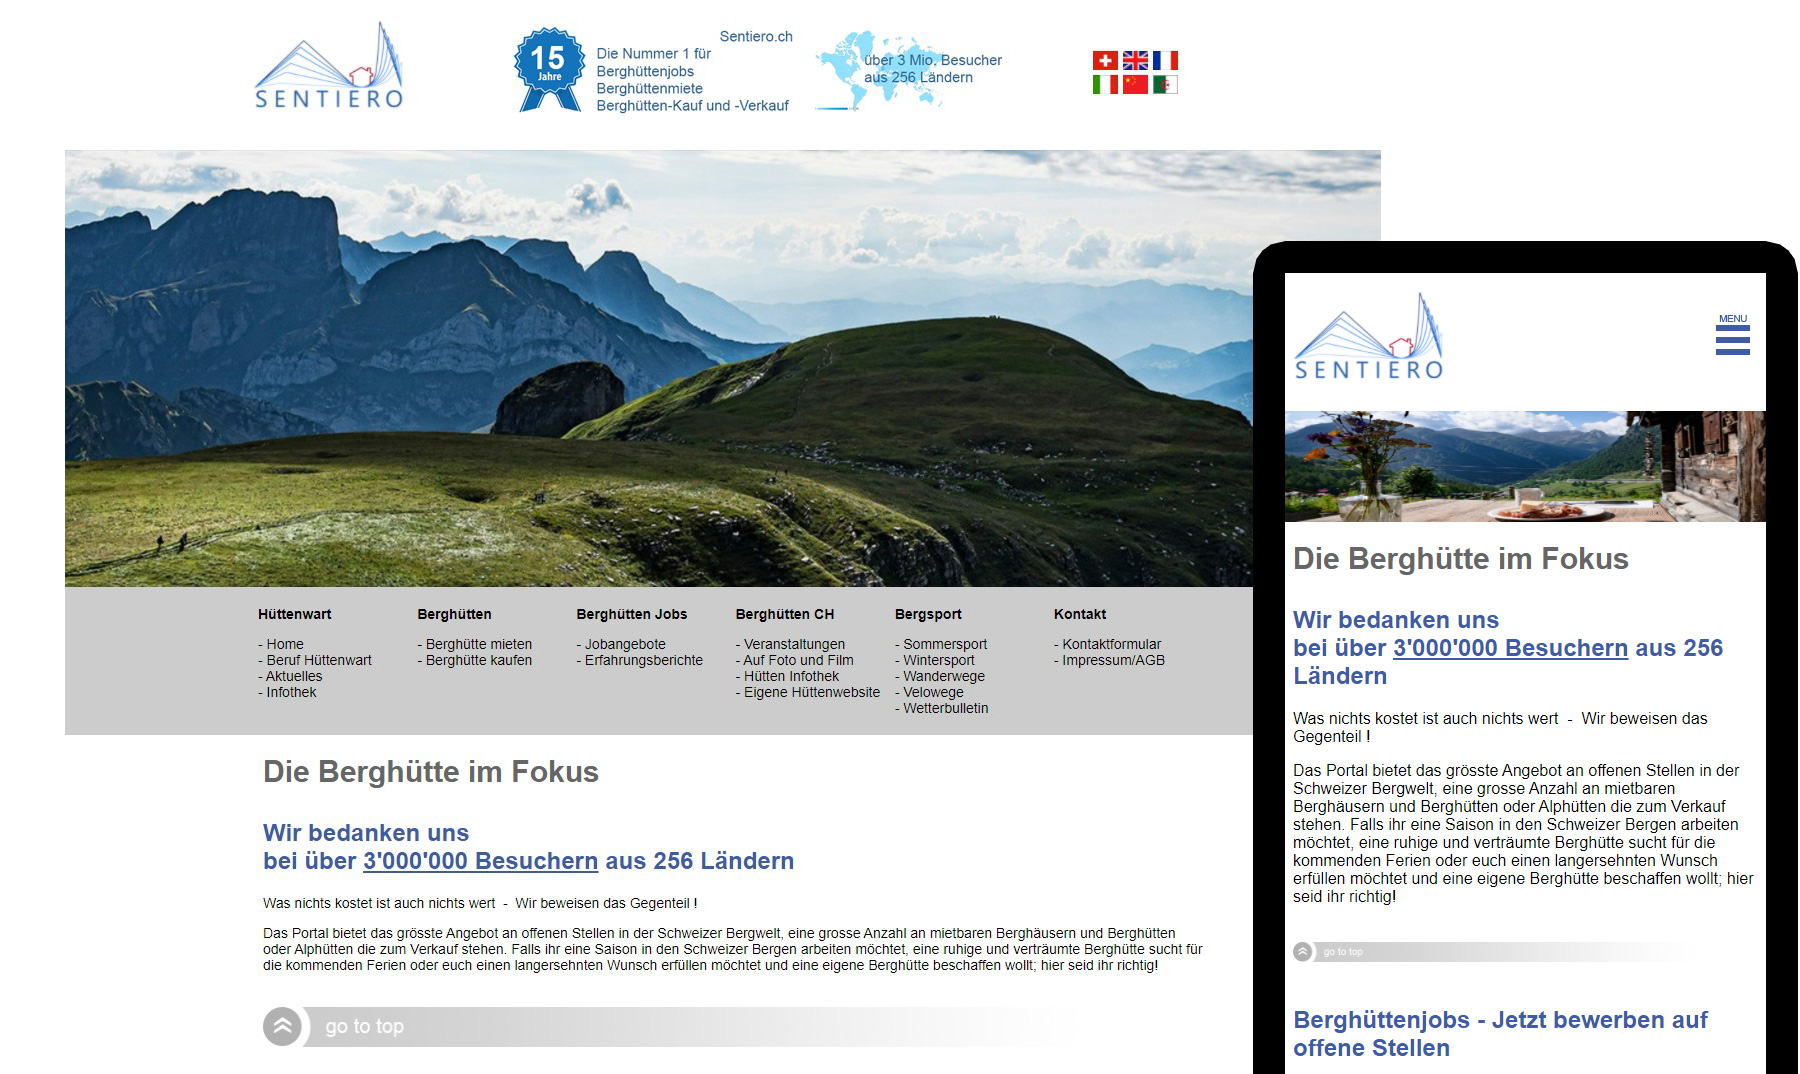 Eine unserer grössten Webdesign Projekte mit über 200 Seiten für Schweizer Berghütten